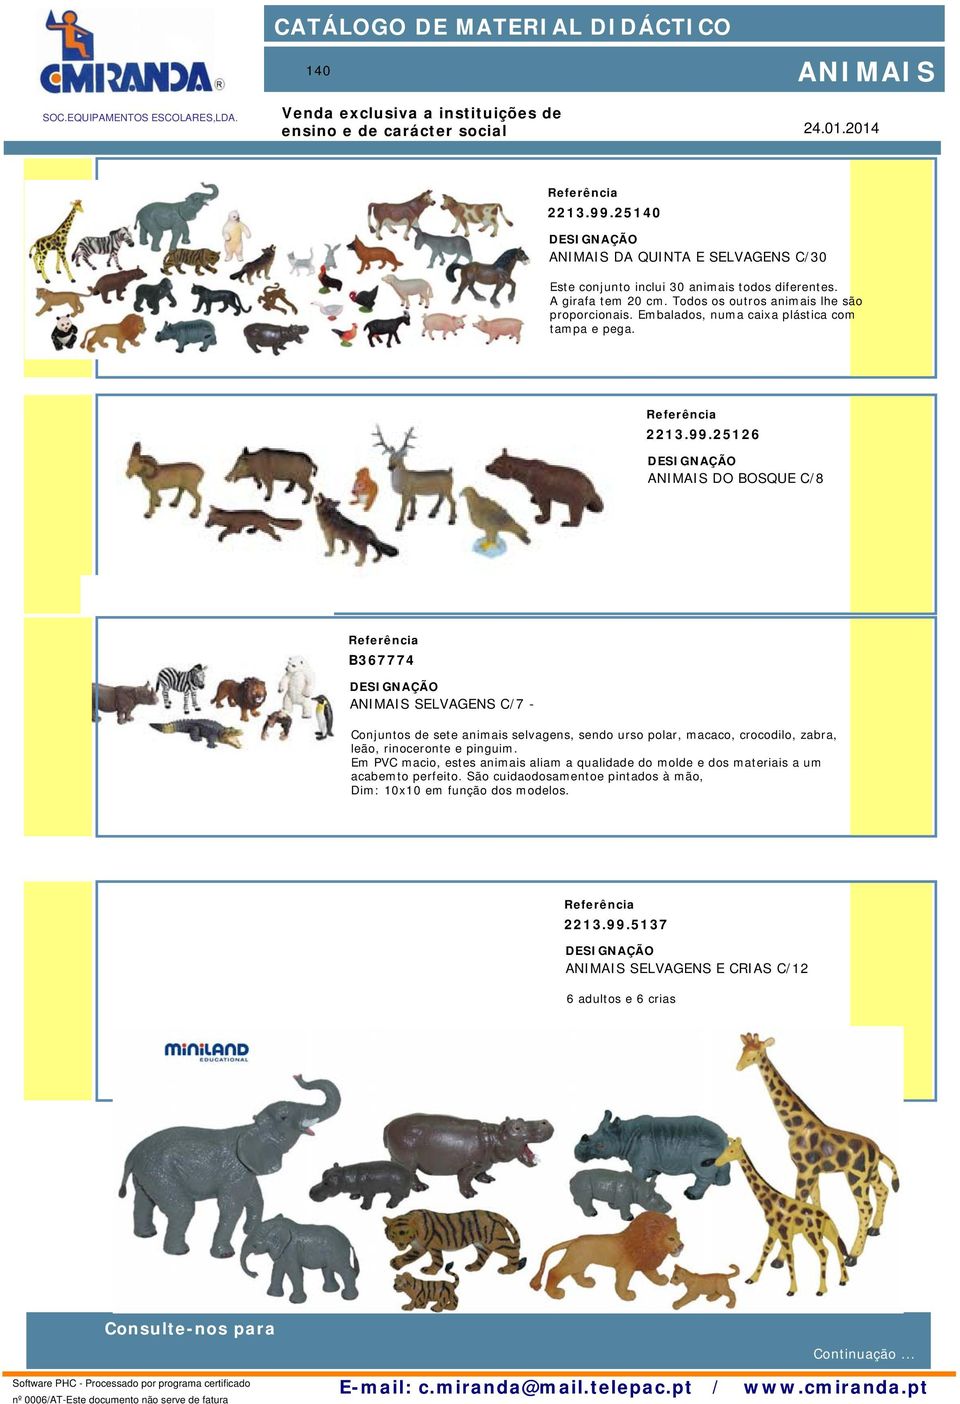 25126 DO BOSQUE C/8 B367774 SELVAGENS C/7 - Conjuntos de sete animais selvagens, sendo urso polar, macaco, crocodilo, zabra, leão, rinoceronte e